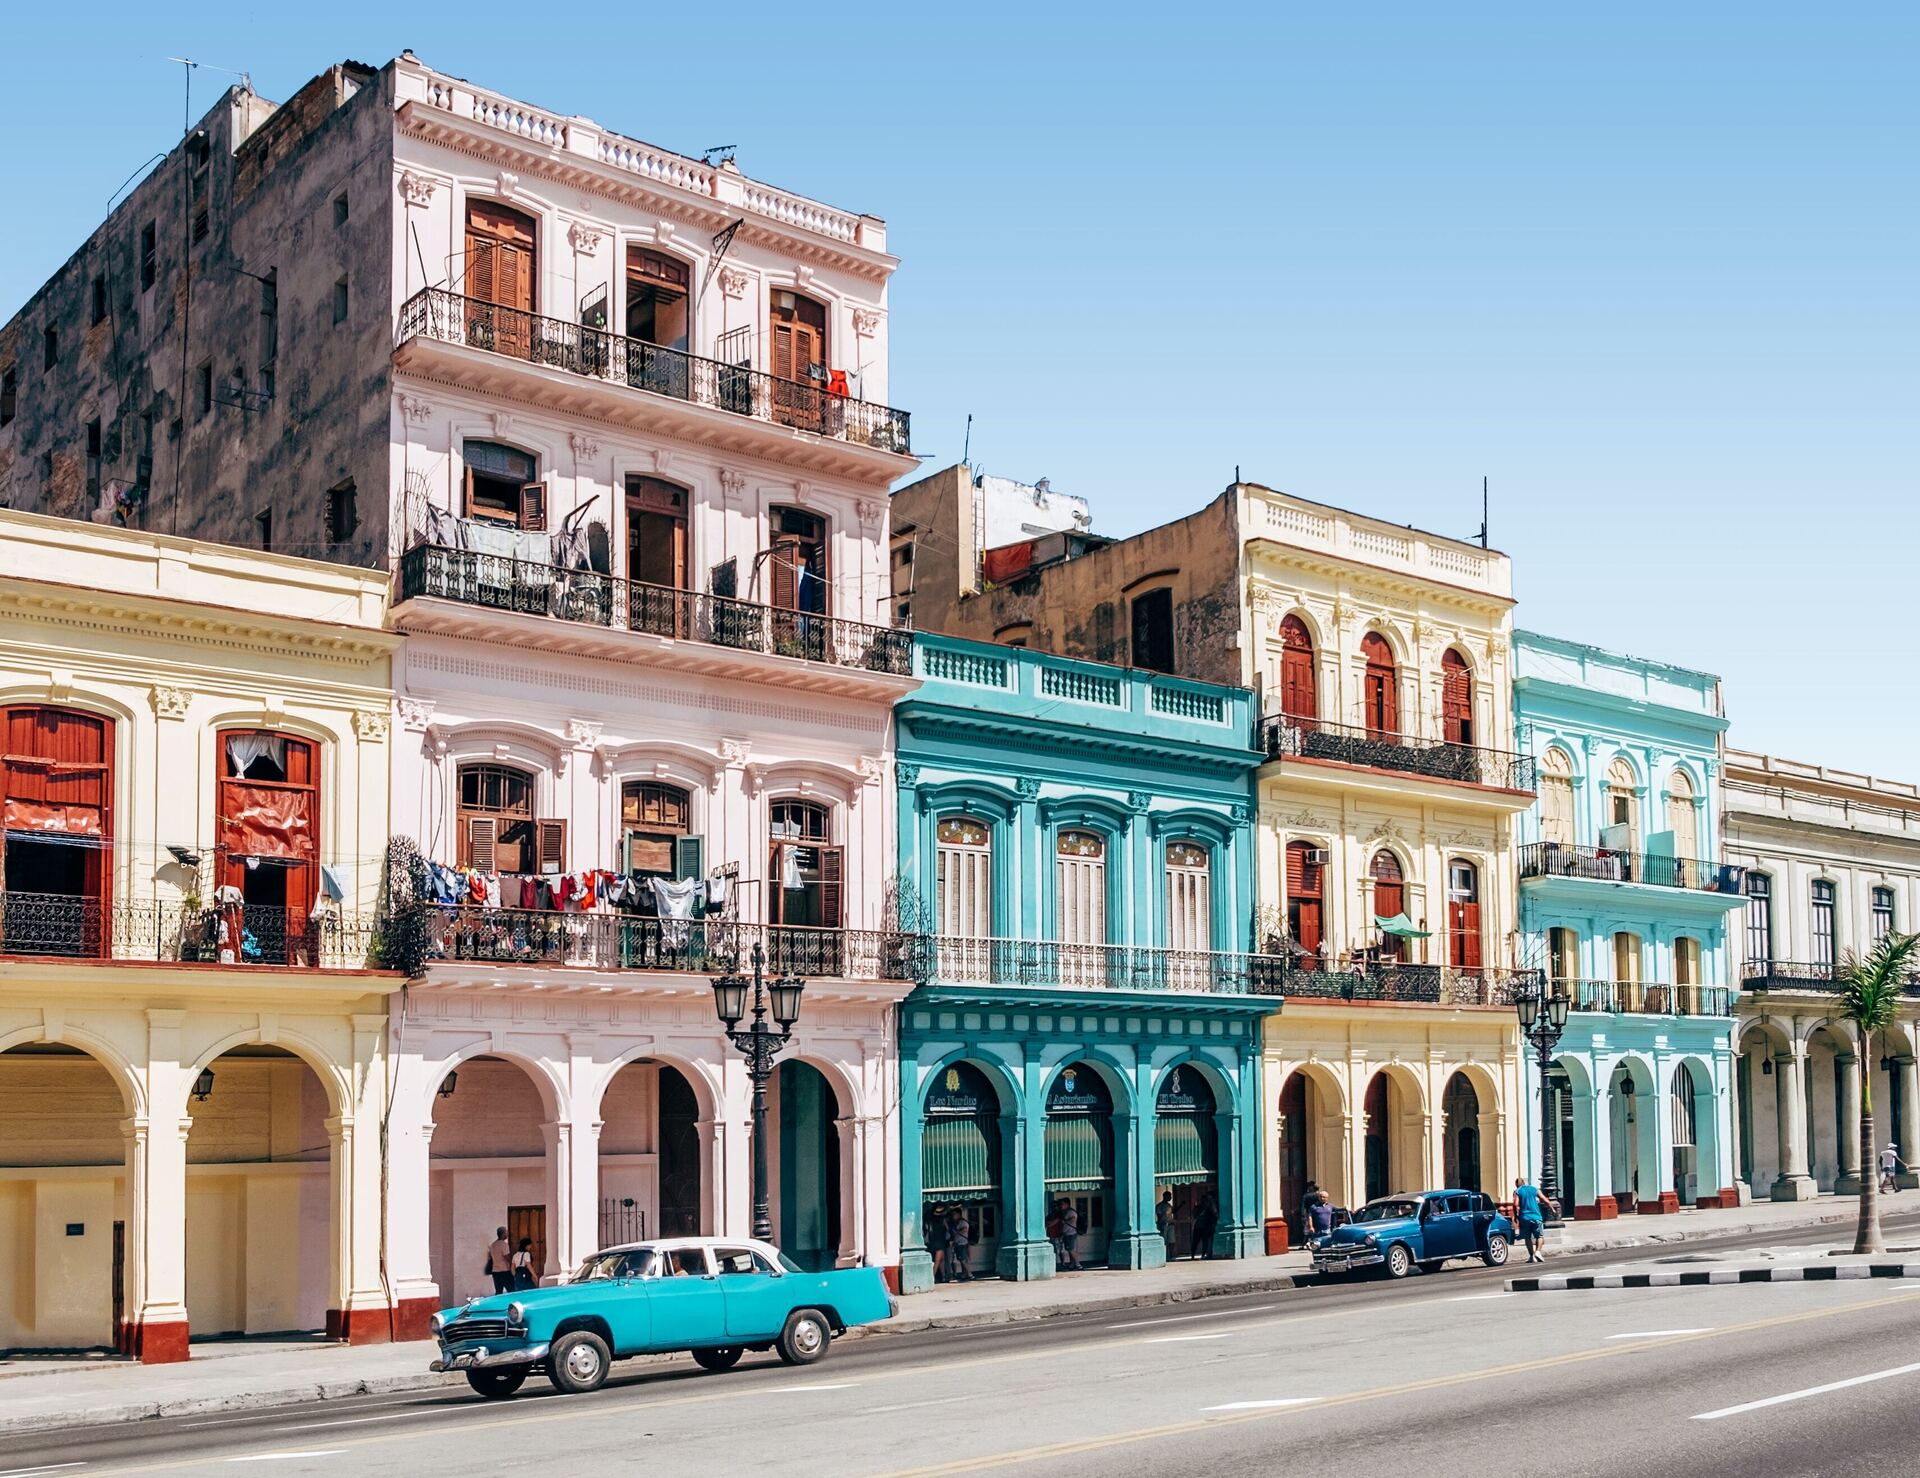 РИАМО: отдохнуть на Кубе летом можно за 170 тысяч рублей на двоих